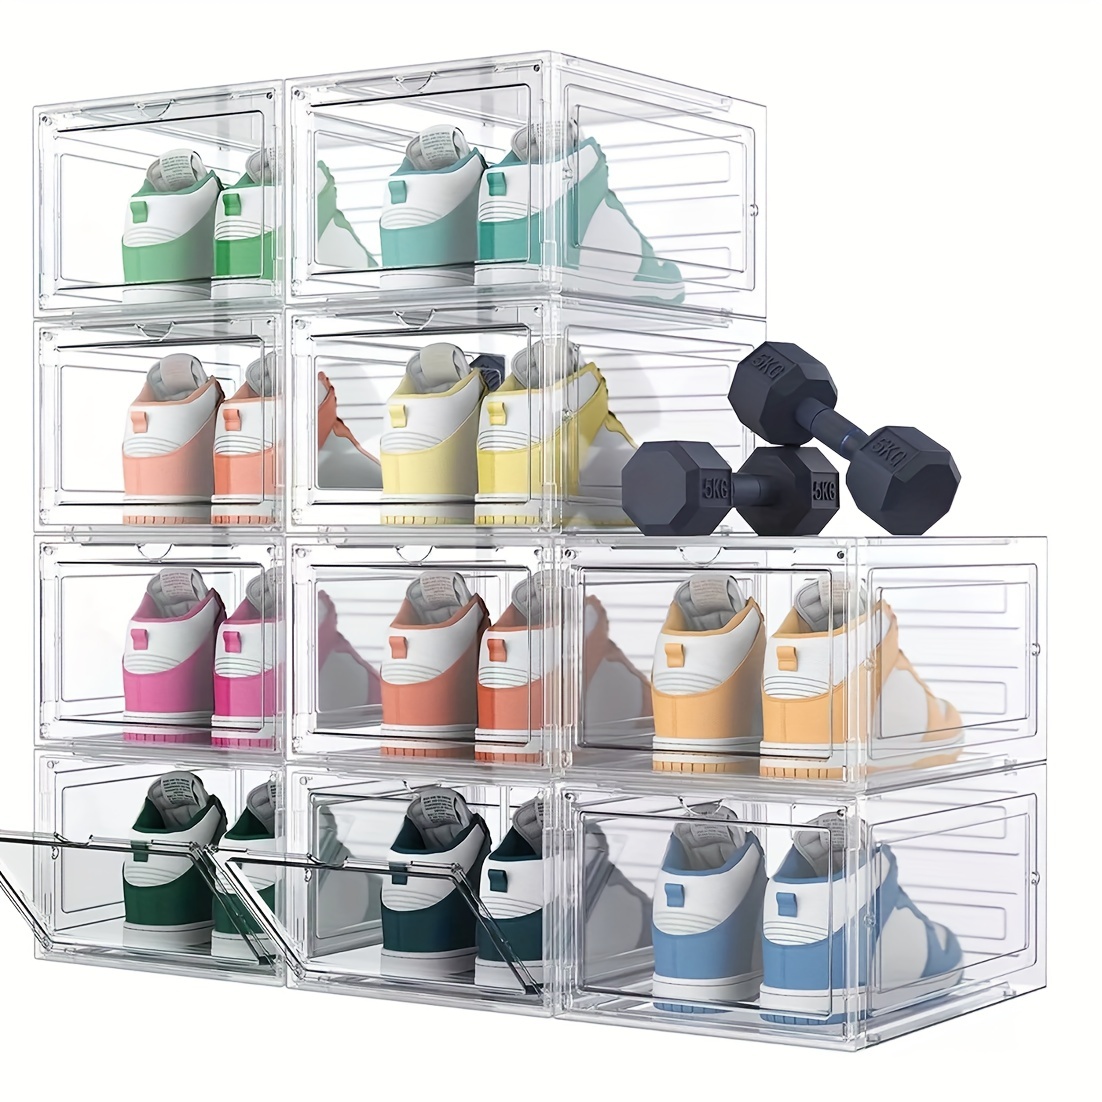 Wttfc Caja de zapatos transparente, caja de zapatos transparente, juego de  6, cajas de zapatos apilables de plástico con puerta transparente, cajas